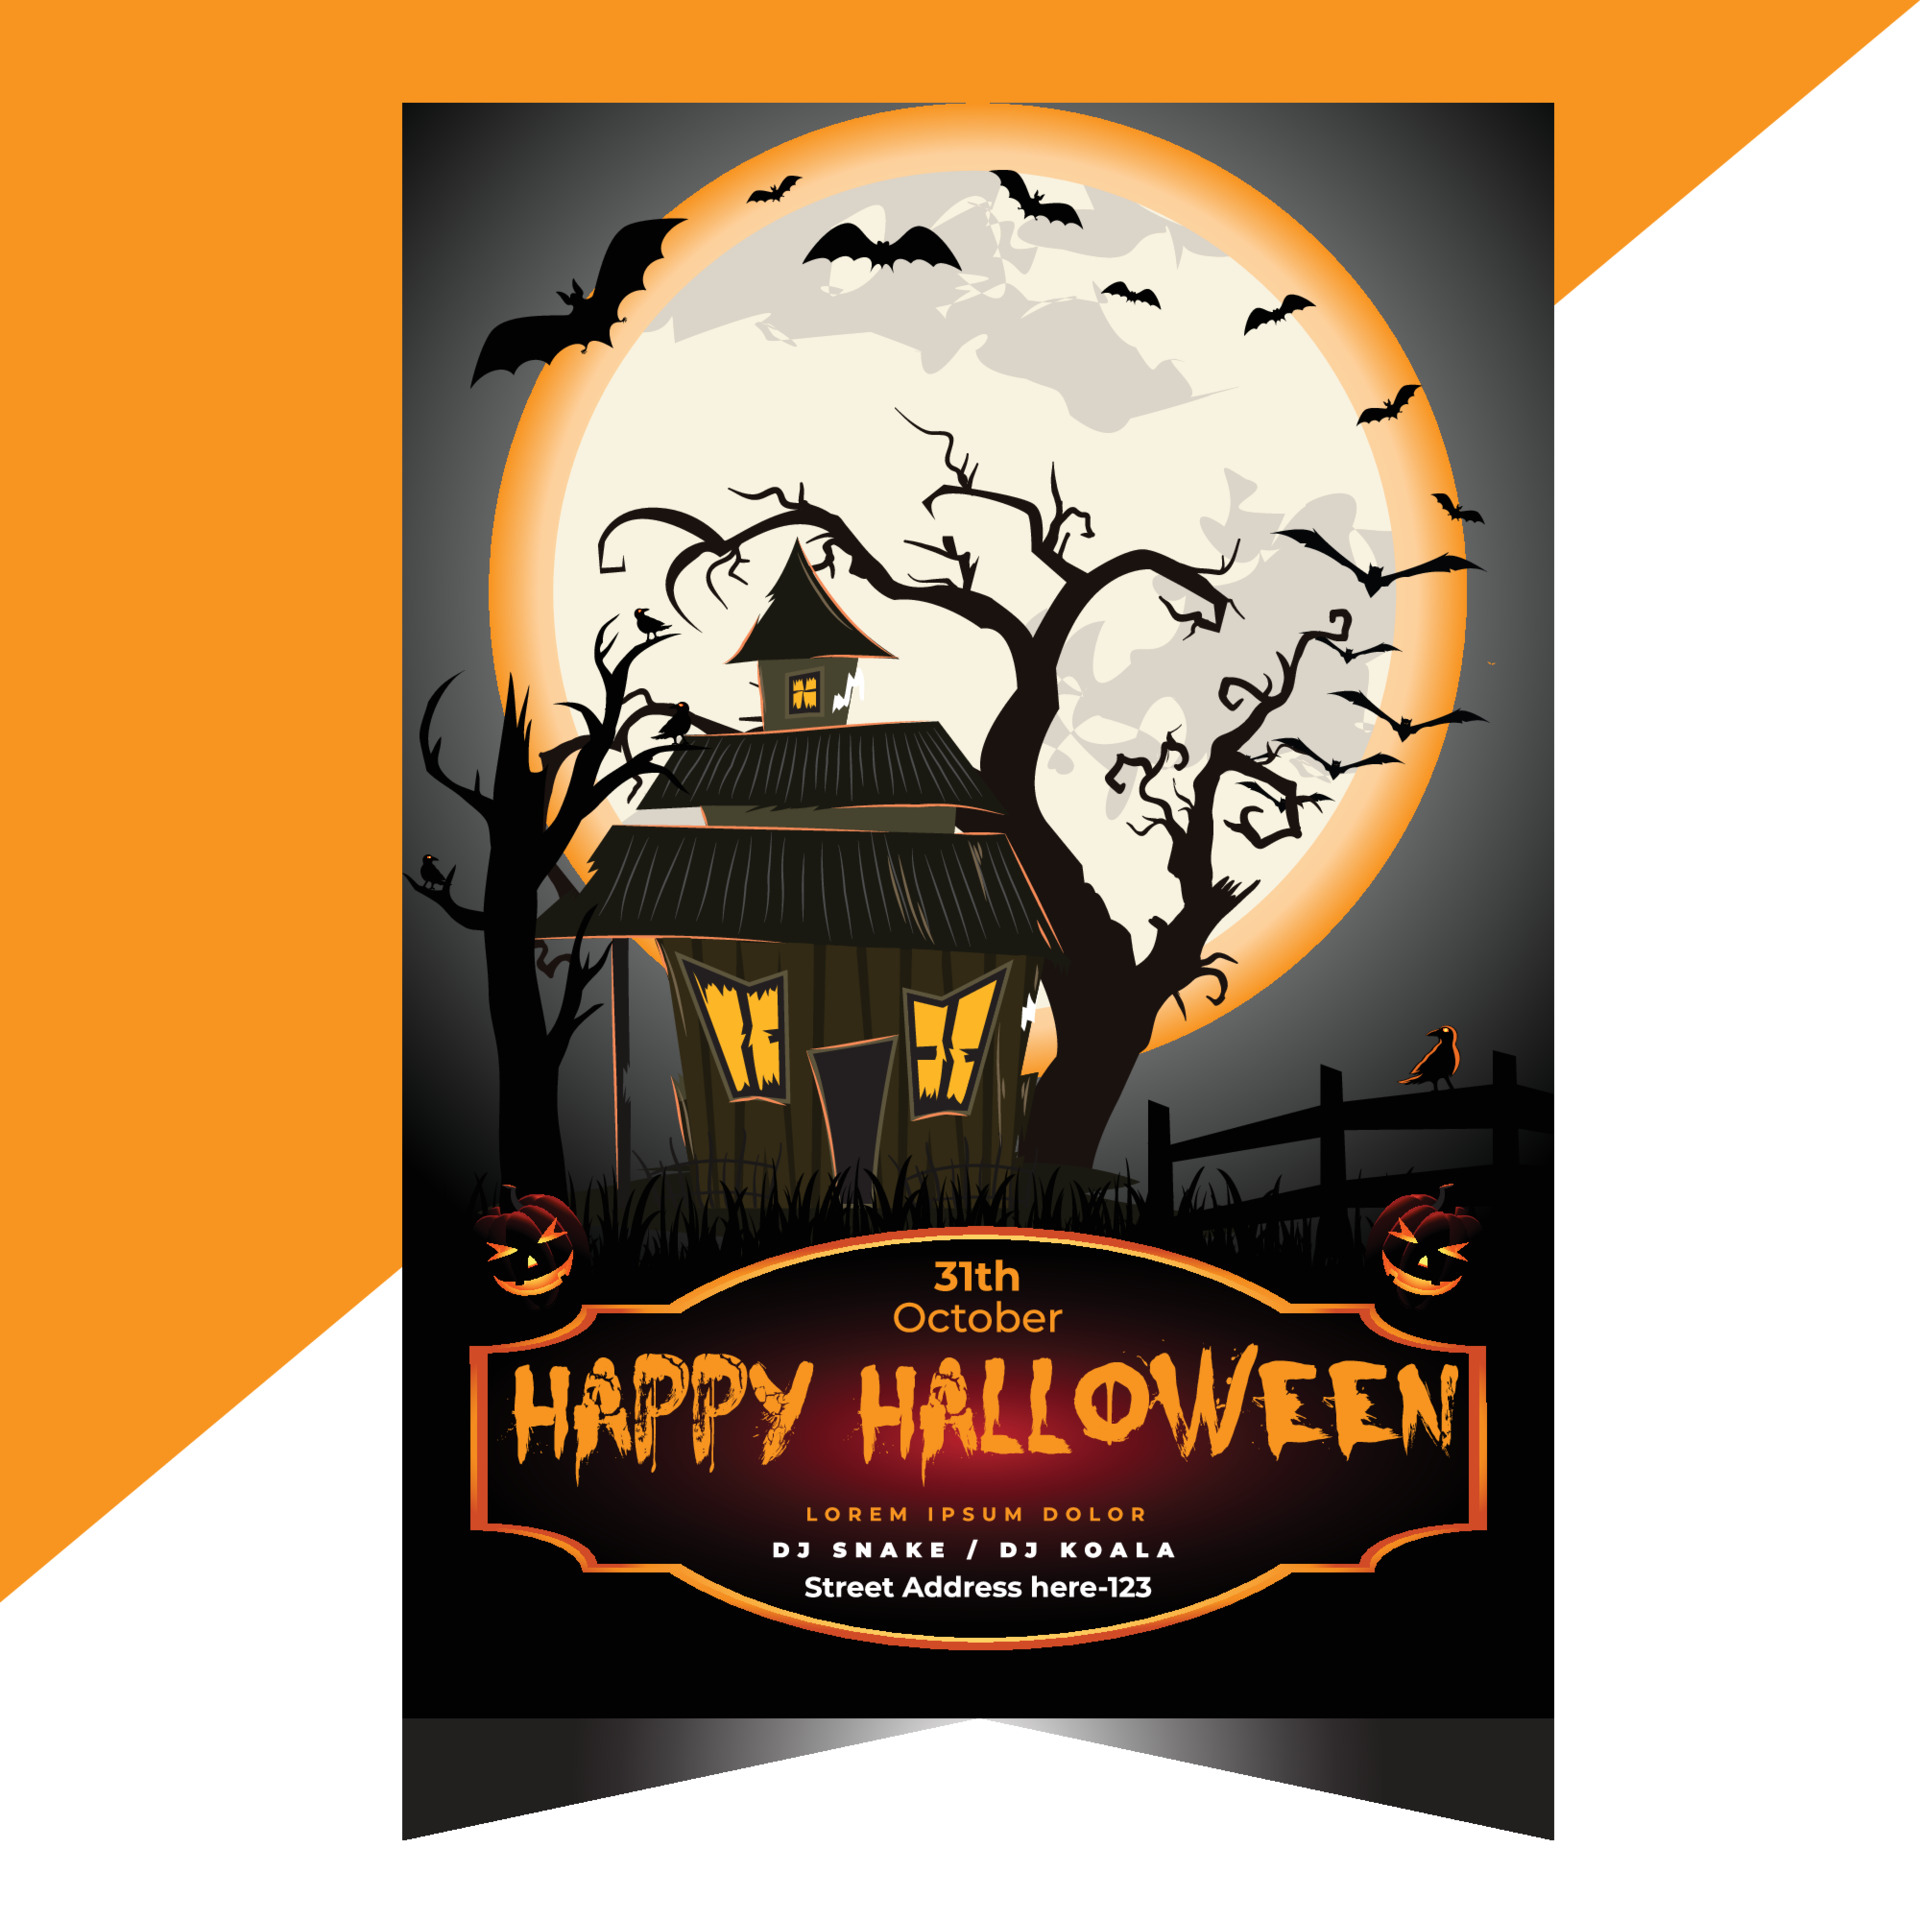 halloween-party-flyer-template-design-3605859-vector-art-at-vecteezy